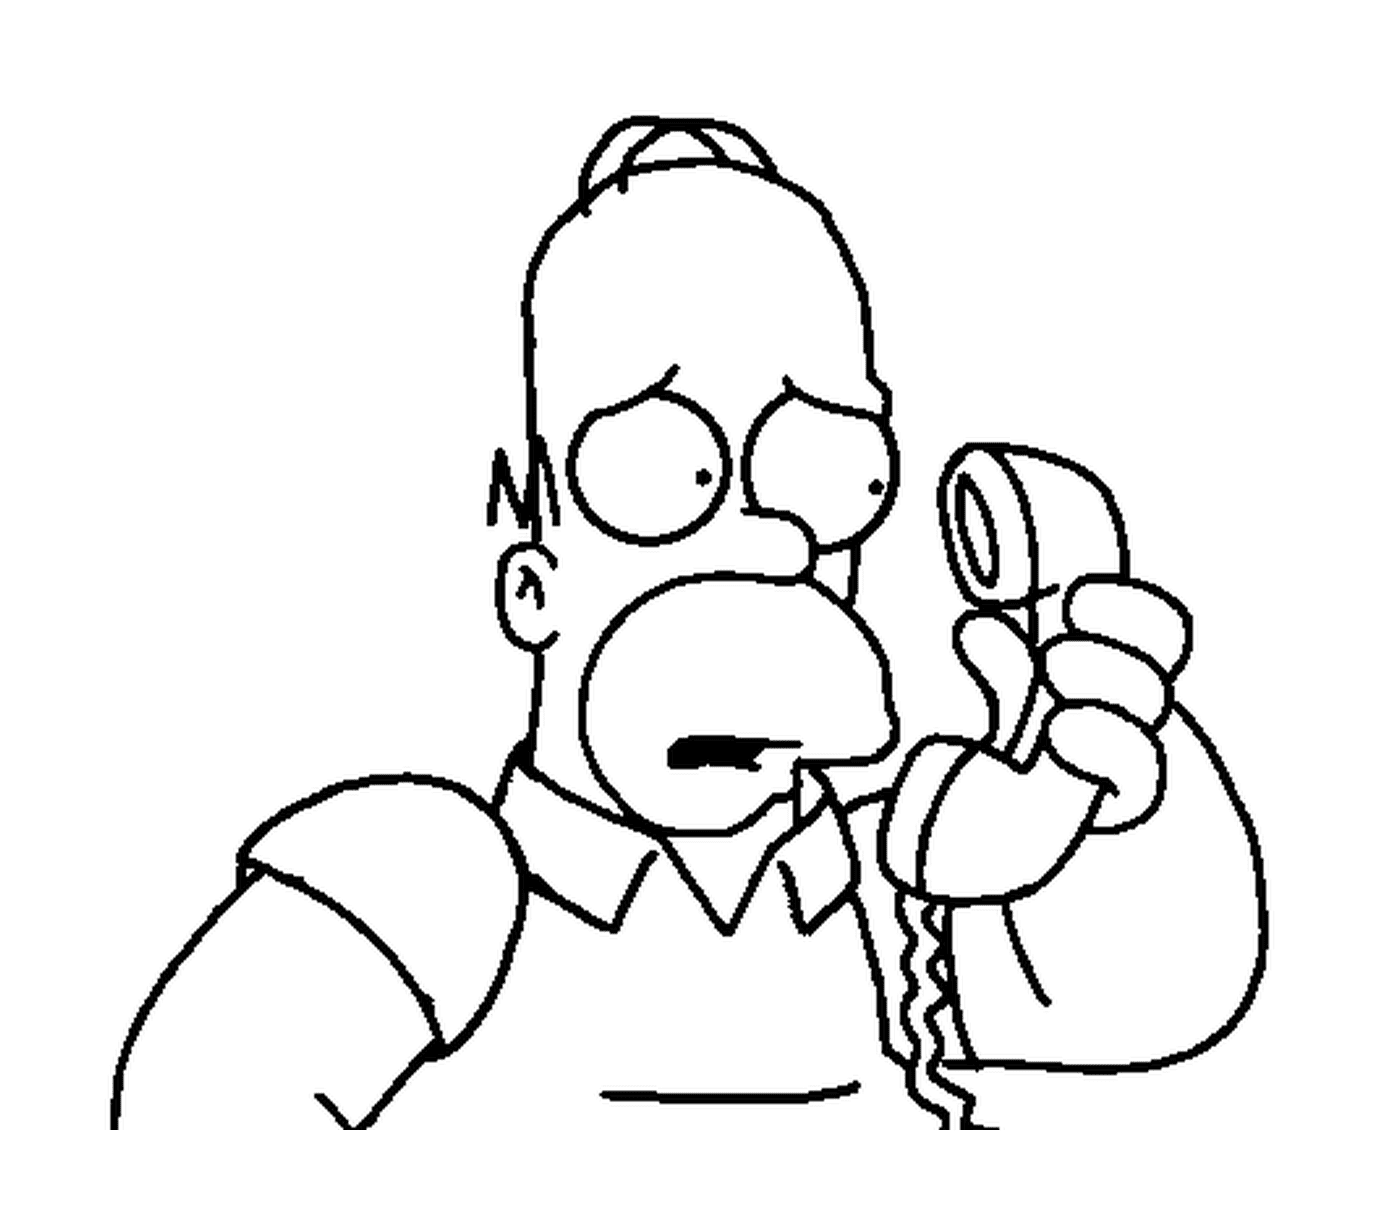  Homero preocupado por el teléfono 